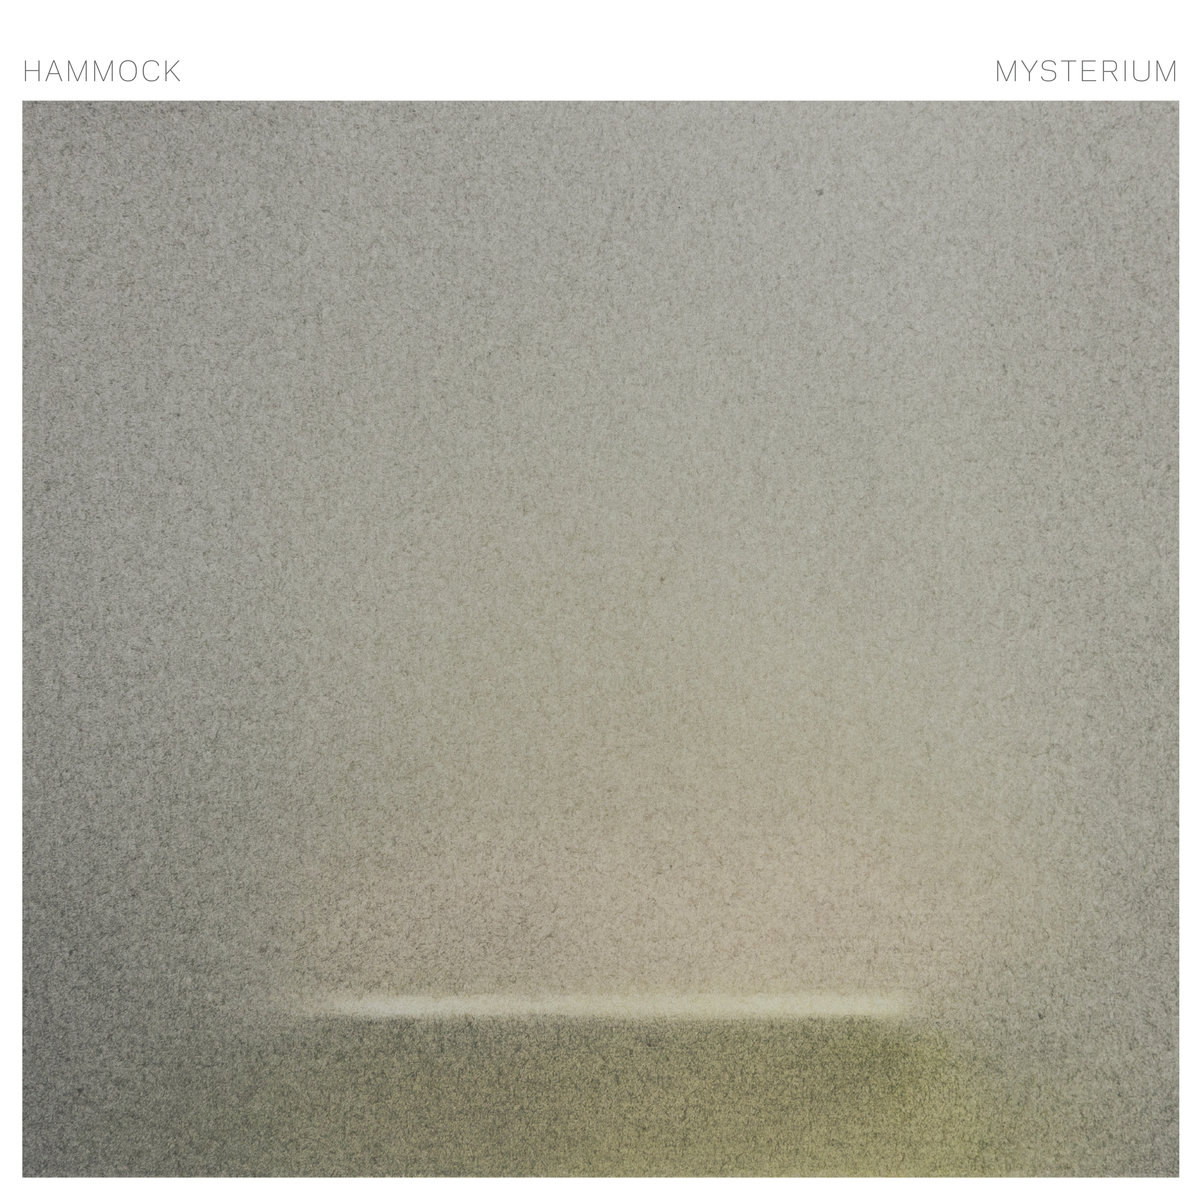 Hammock – Mysterium (2017) [FLAC 24bit/44,1kHz]